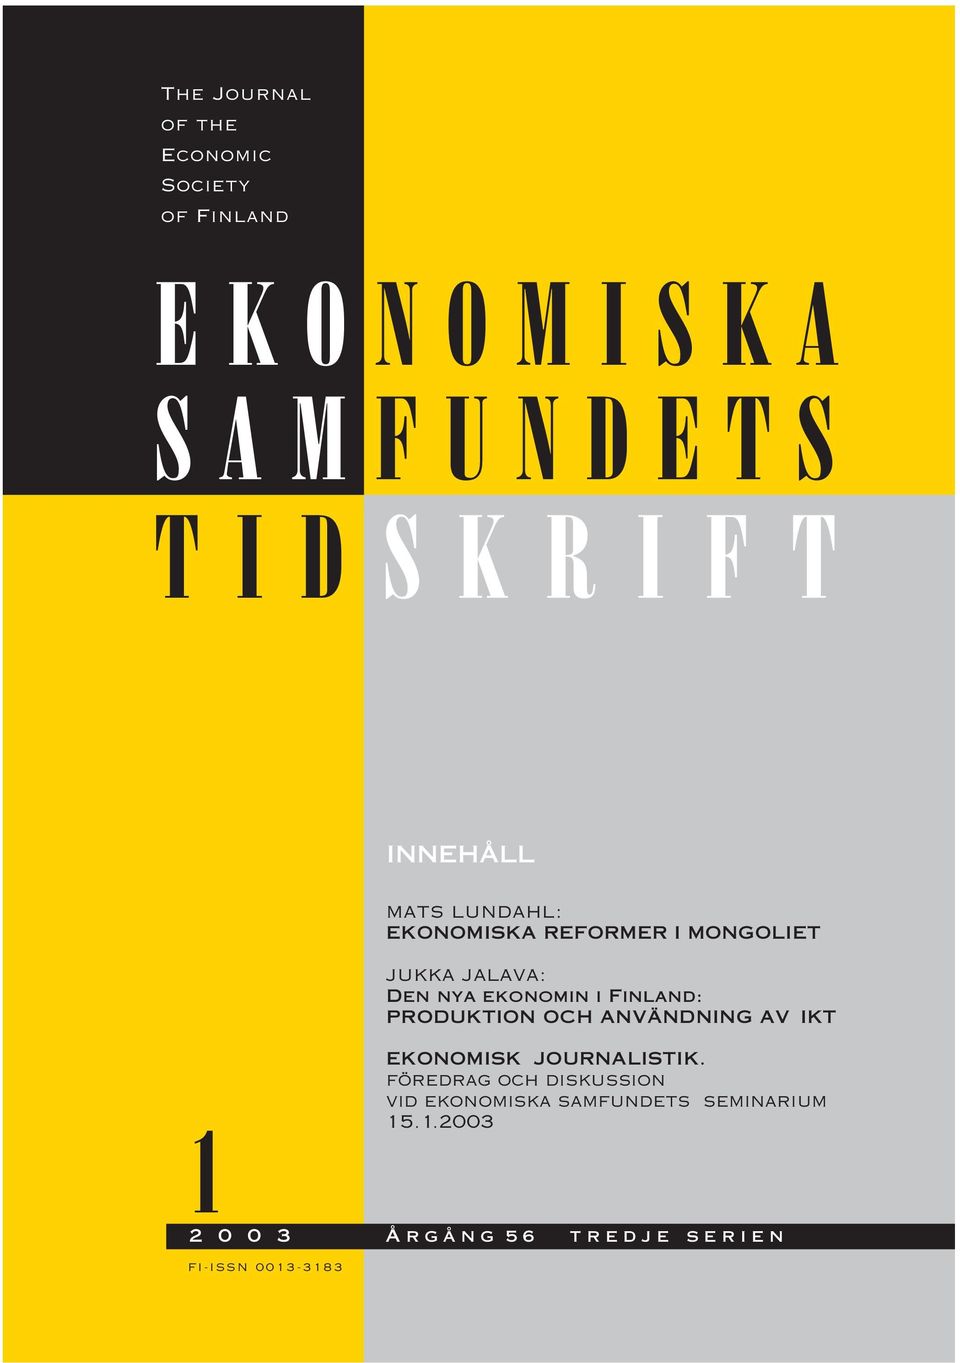 jukka jalava: Den nya ekonomin i Finland: PRODUKTION OCH ANVÄNDNING AV IKT EKONOMISK